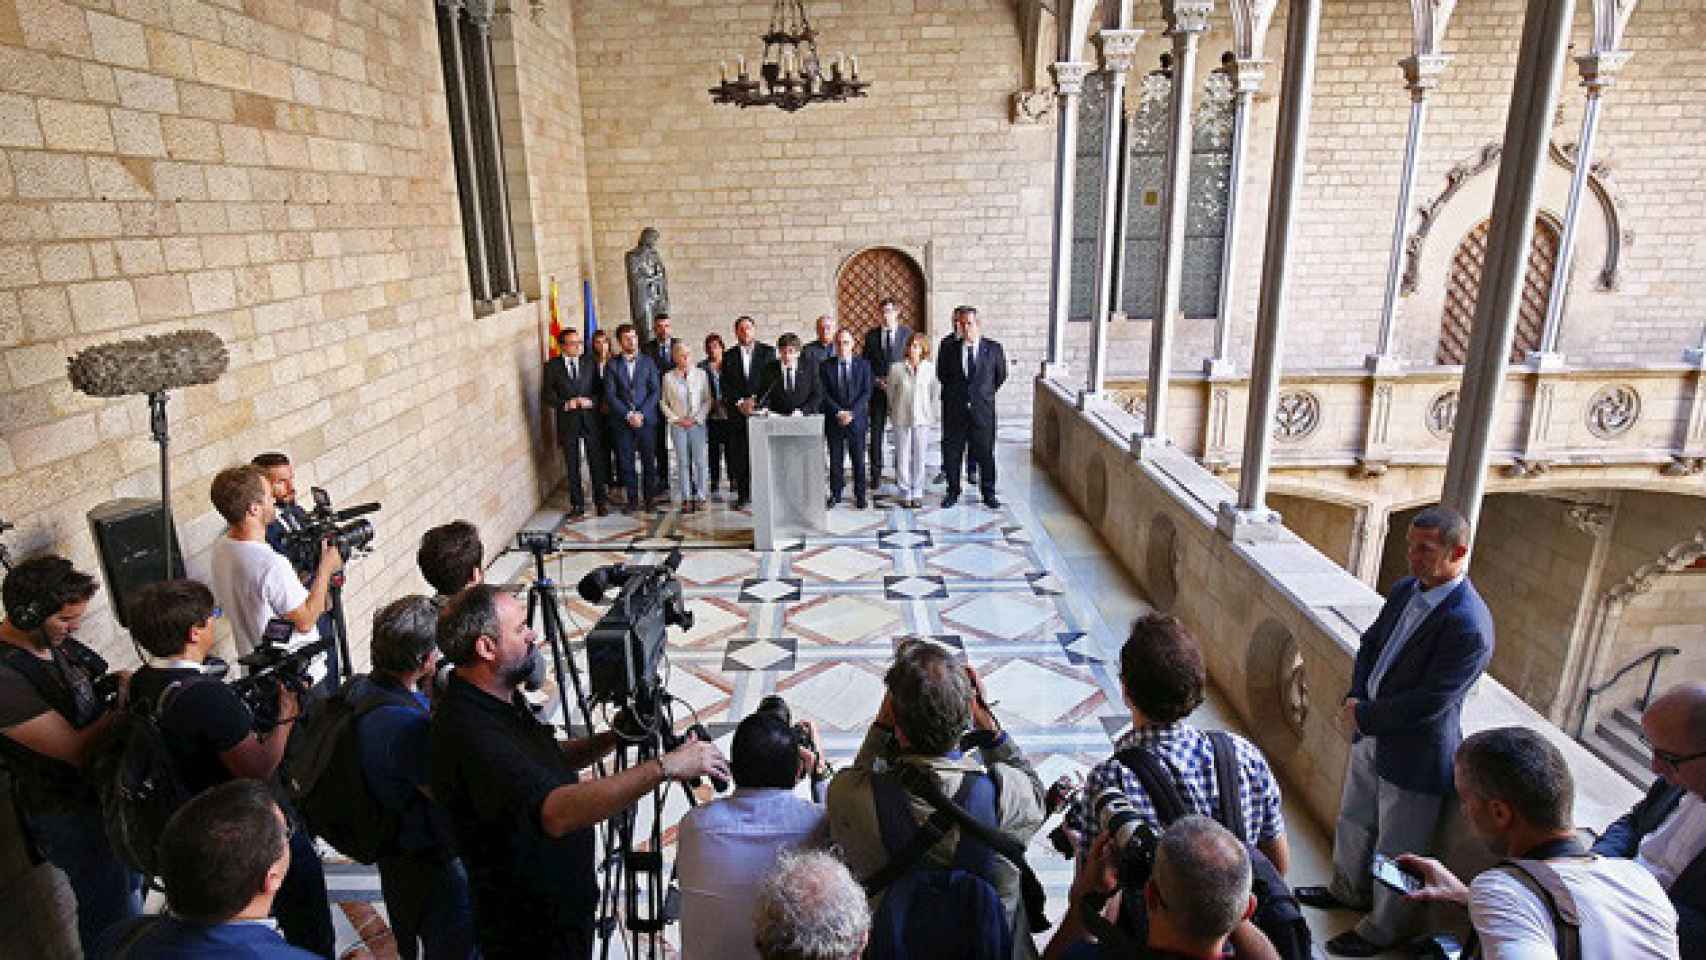 El president de la Generalitat, Carles Puigdemont, rodeado por sus socios del Govern en la declaración institucional tras las detenciones y registros de la Guardia Civil de cara al 1-O / CG